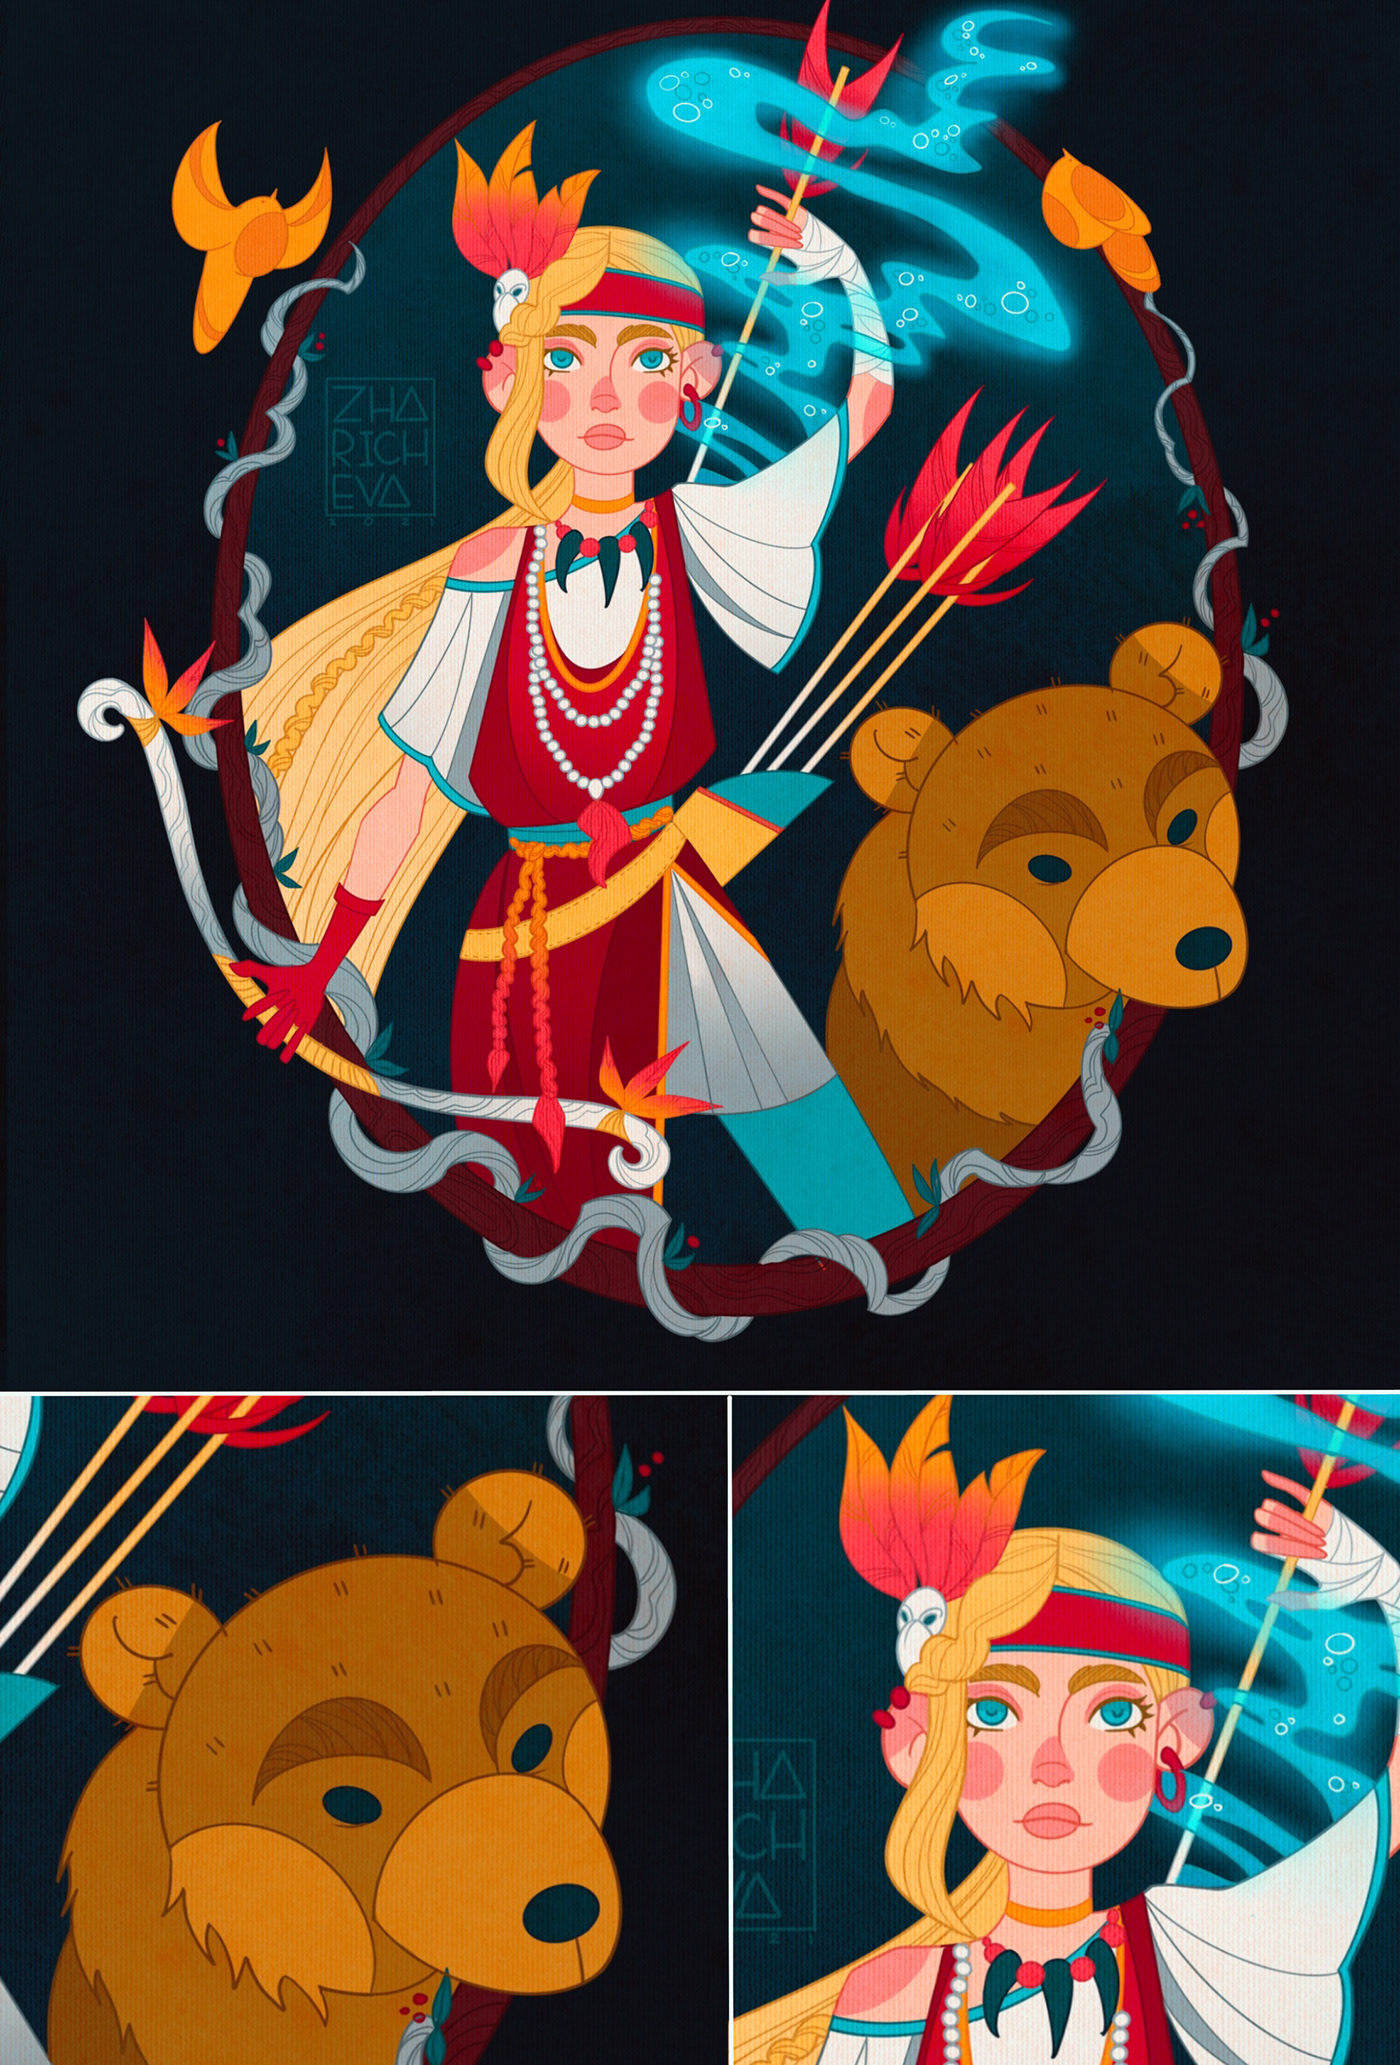 art Character design  fantasy ILLUSTRATION  postcard board game card game Illustrator